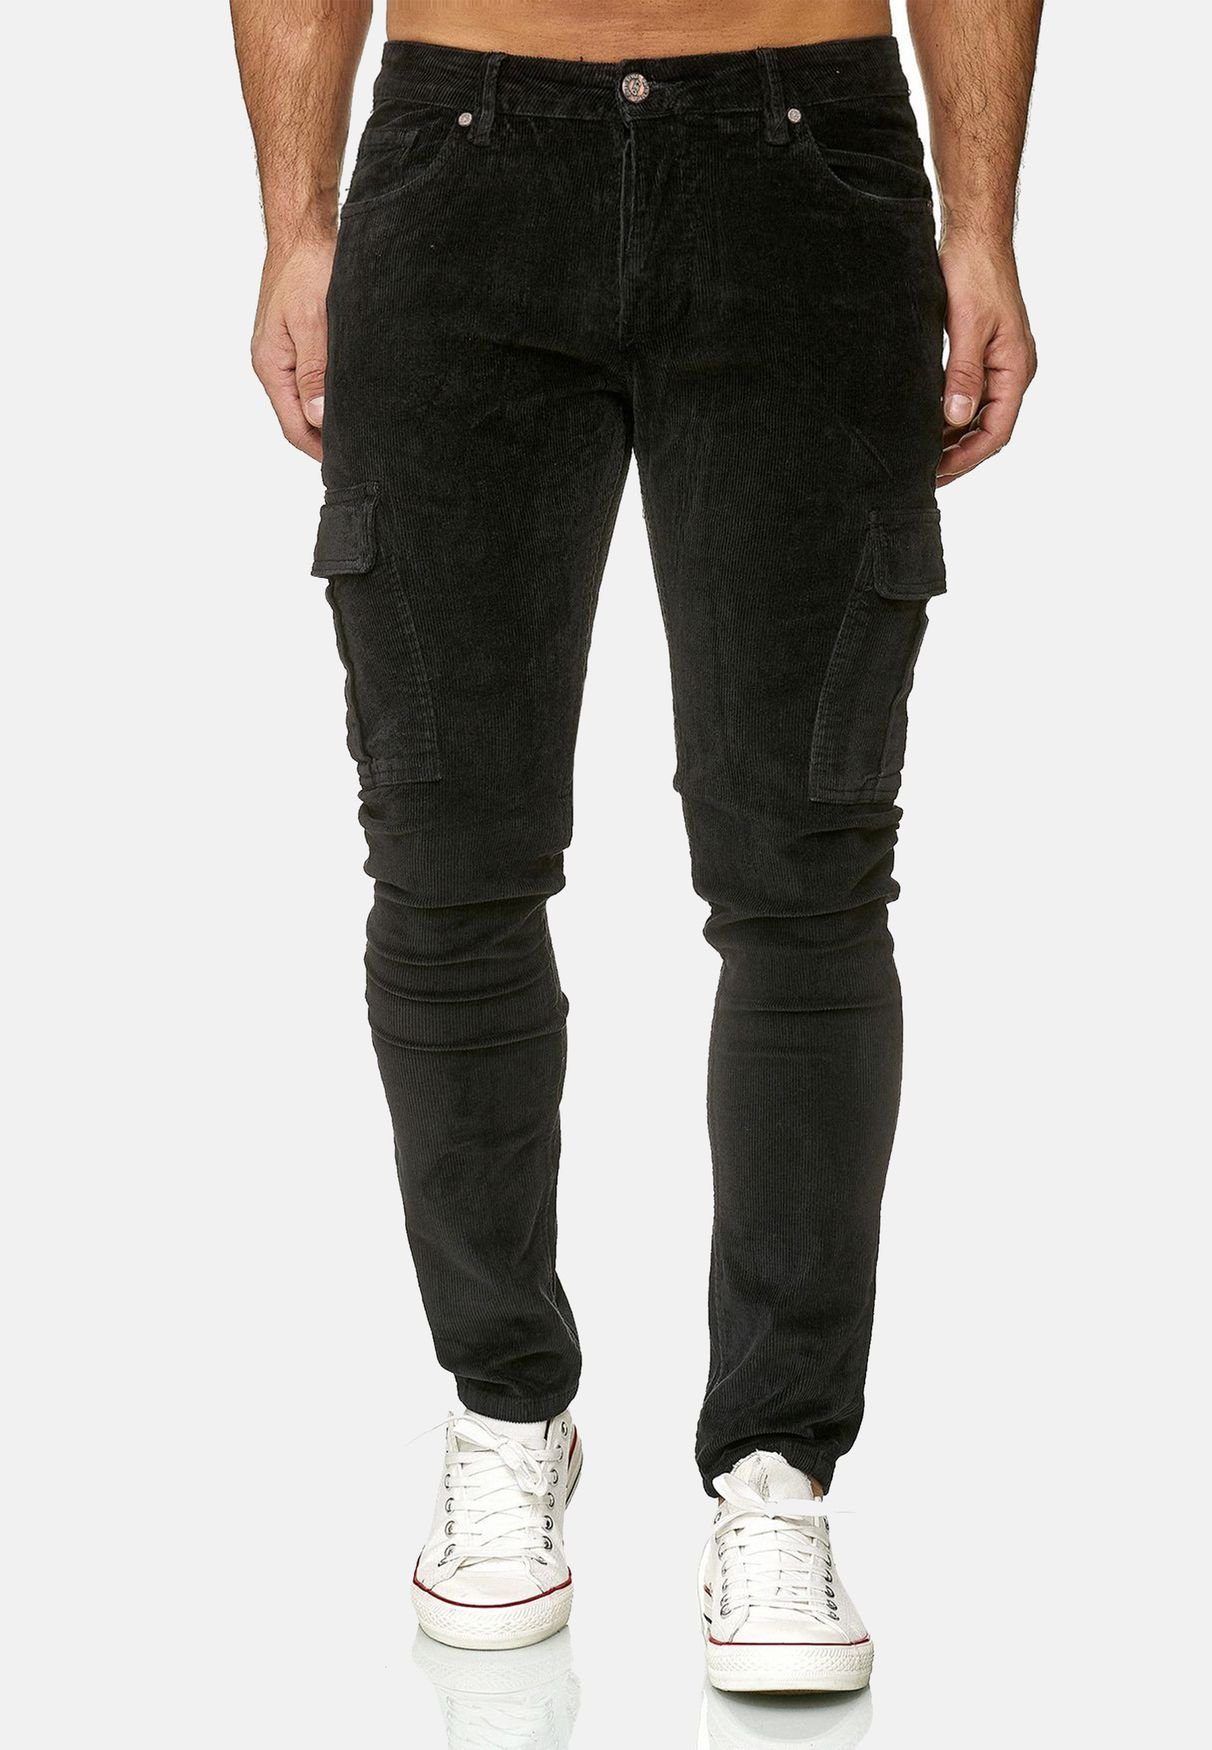 Neu Herren Cargohose Jeans Cargo Hose Slim Freizeithose 100% Baumwolle Denim 